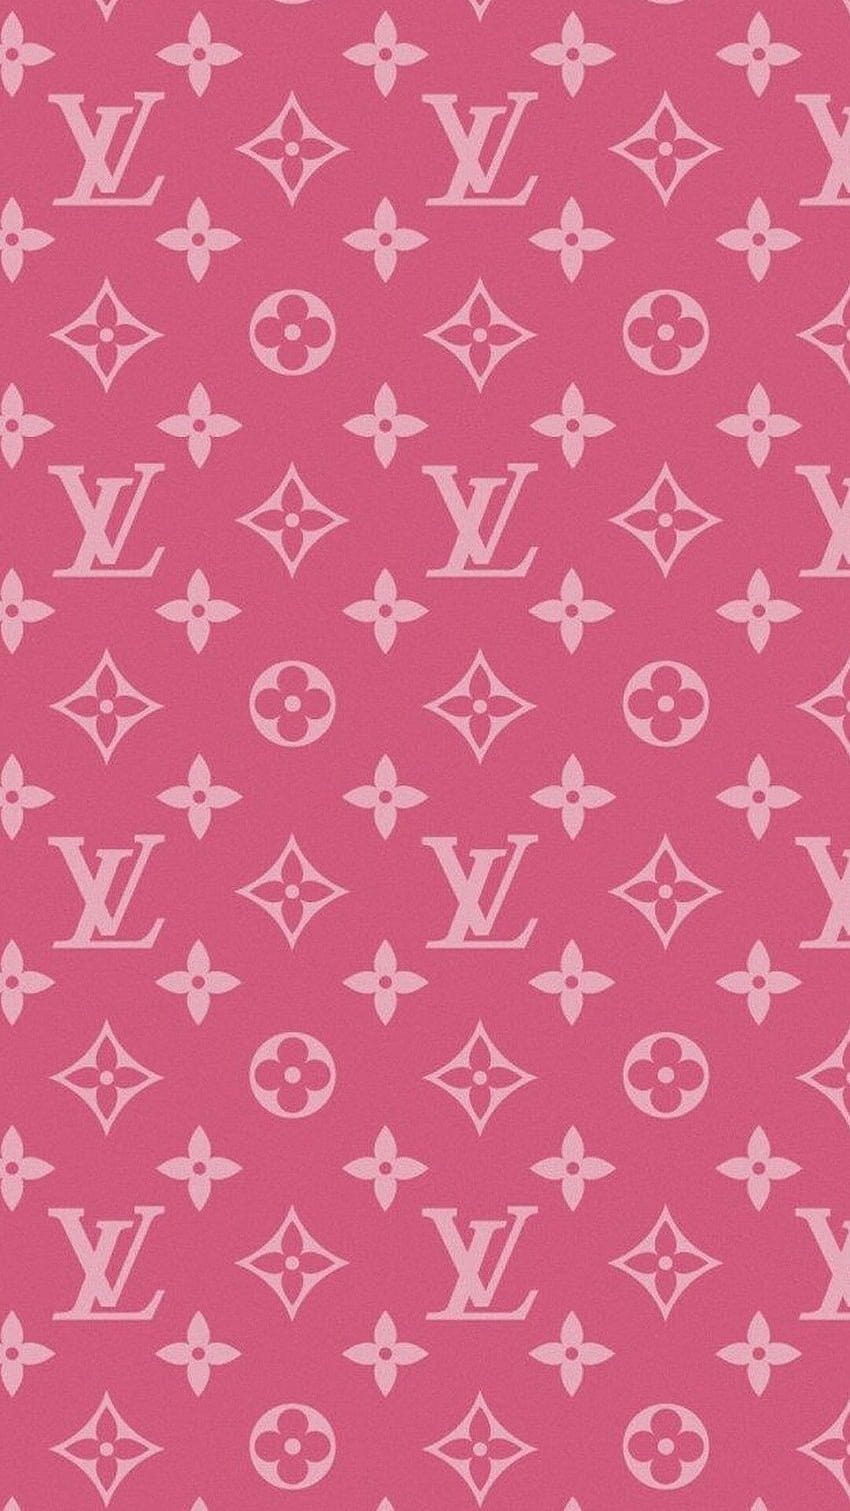 HD Louis Vuitton Wallpaper - iXpap